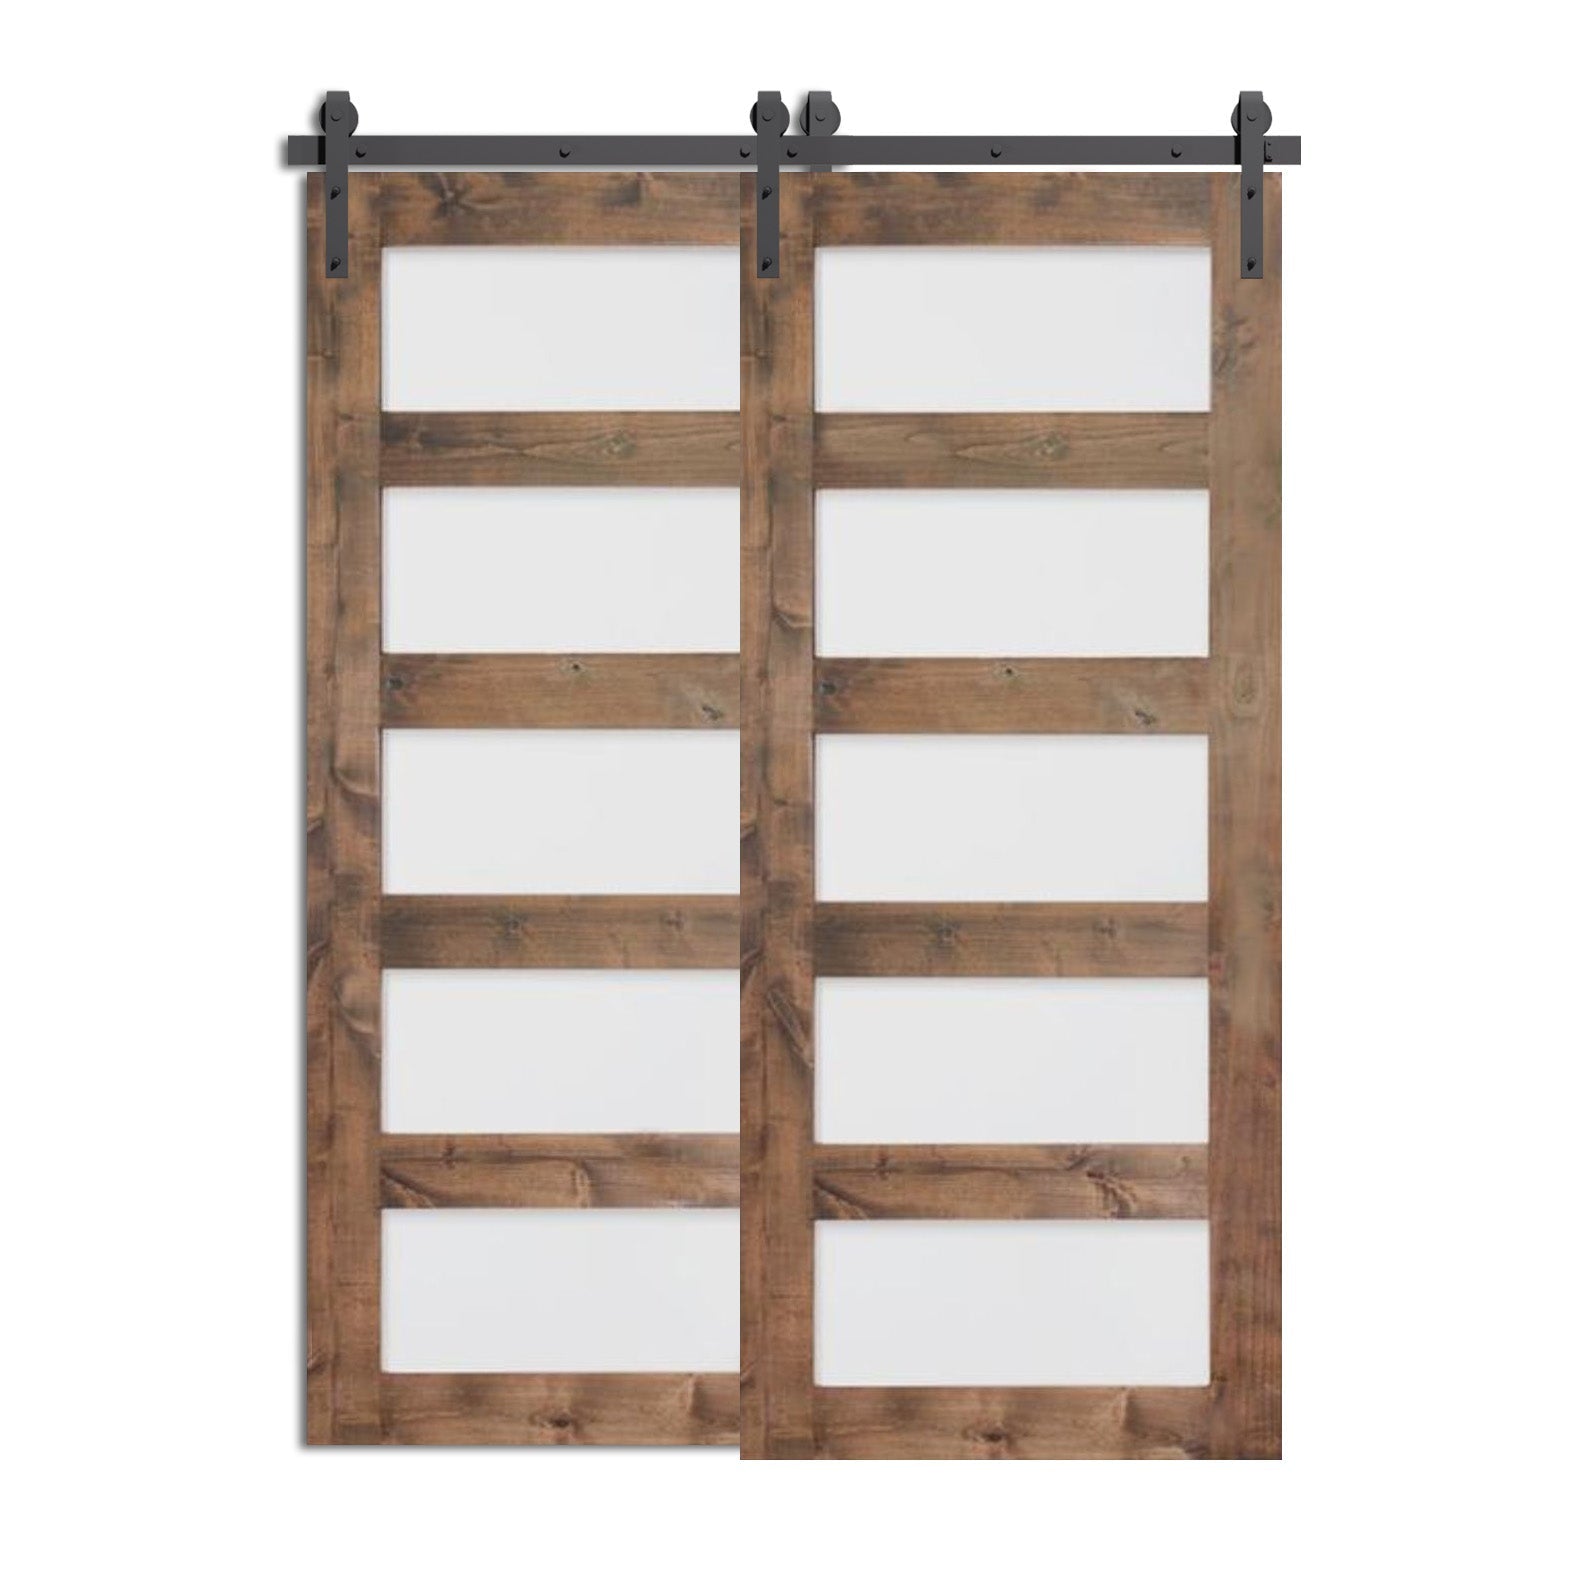 Vrens -  On Sale 5 Panel Modern Design Double Barn Doors